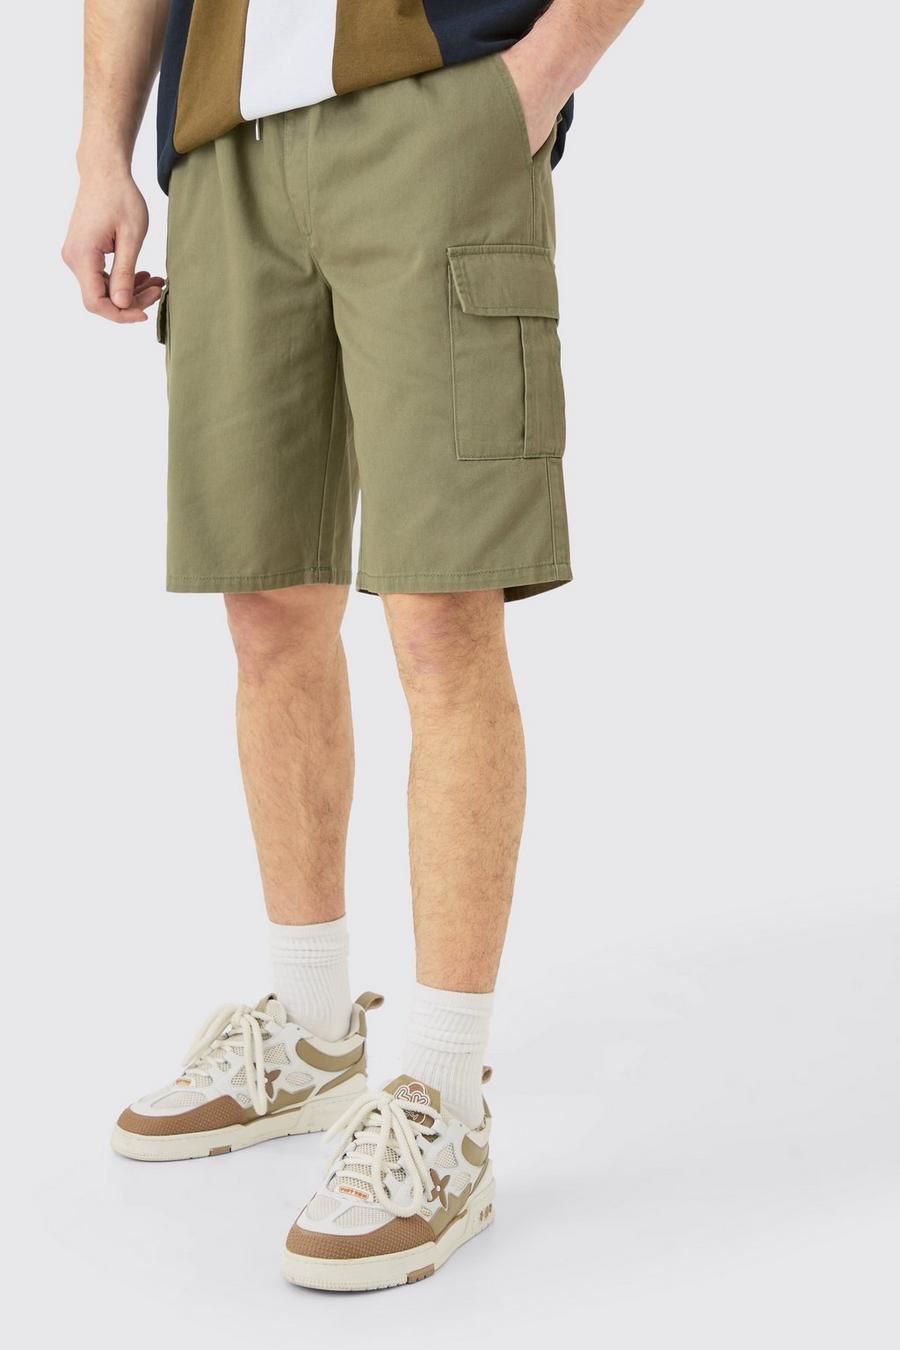 Pantalones cortos Tall cargo holgados con cintura elástica en color caqui, Khaki